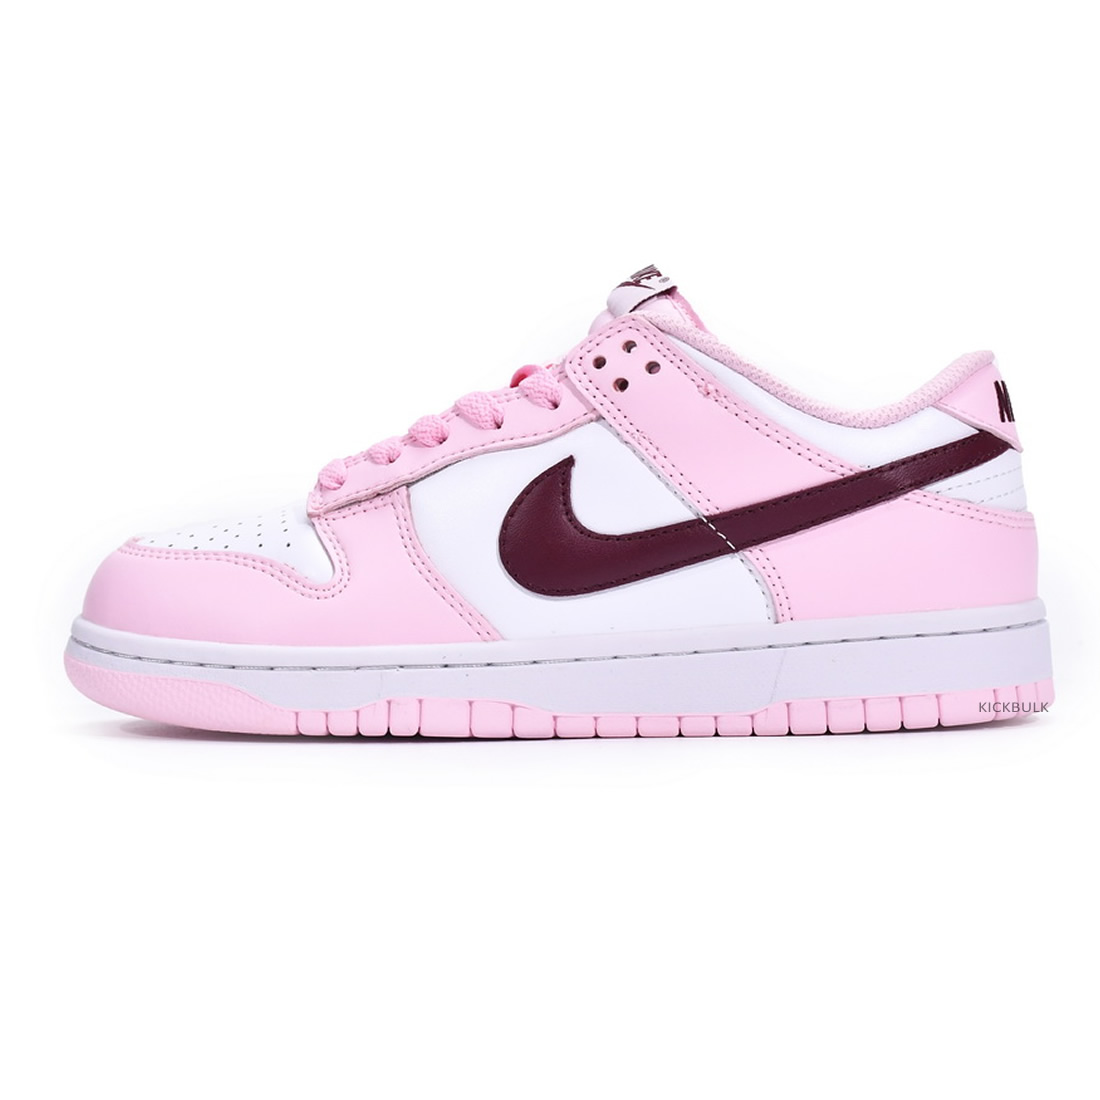 Nike Dunk Low Gs Pink Foam Cw1590 601 1 - www.kickbulk.co